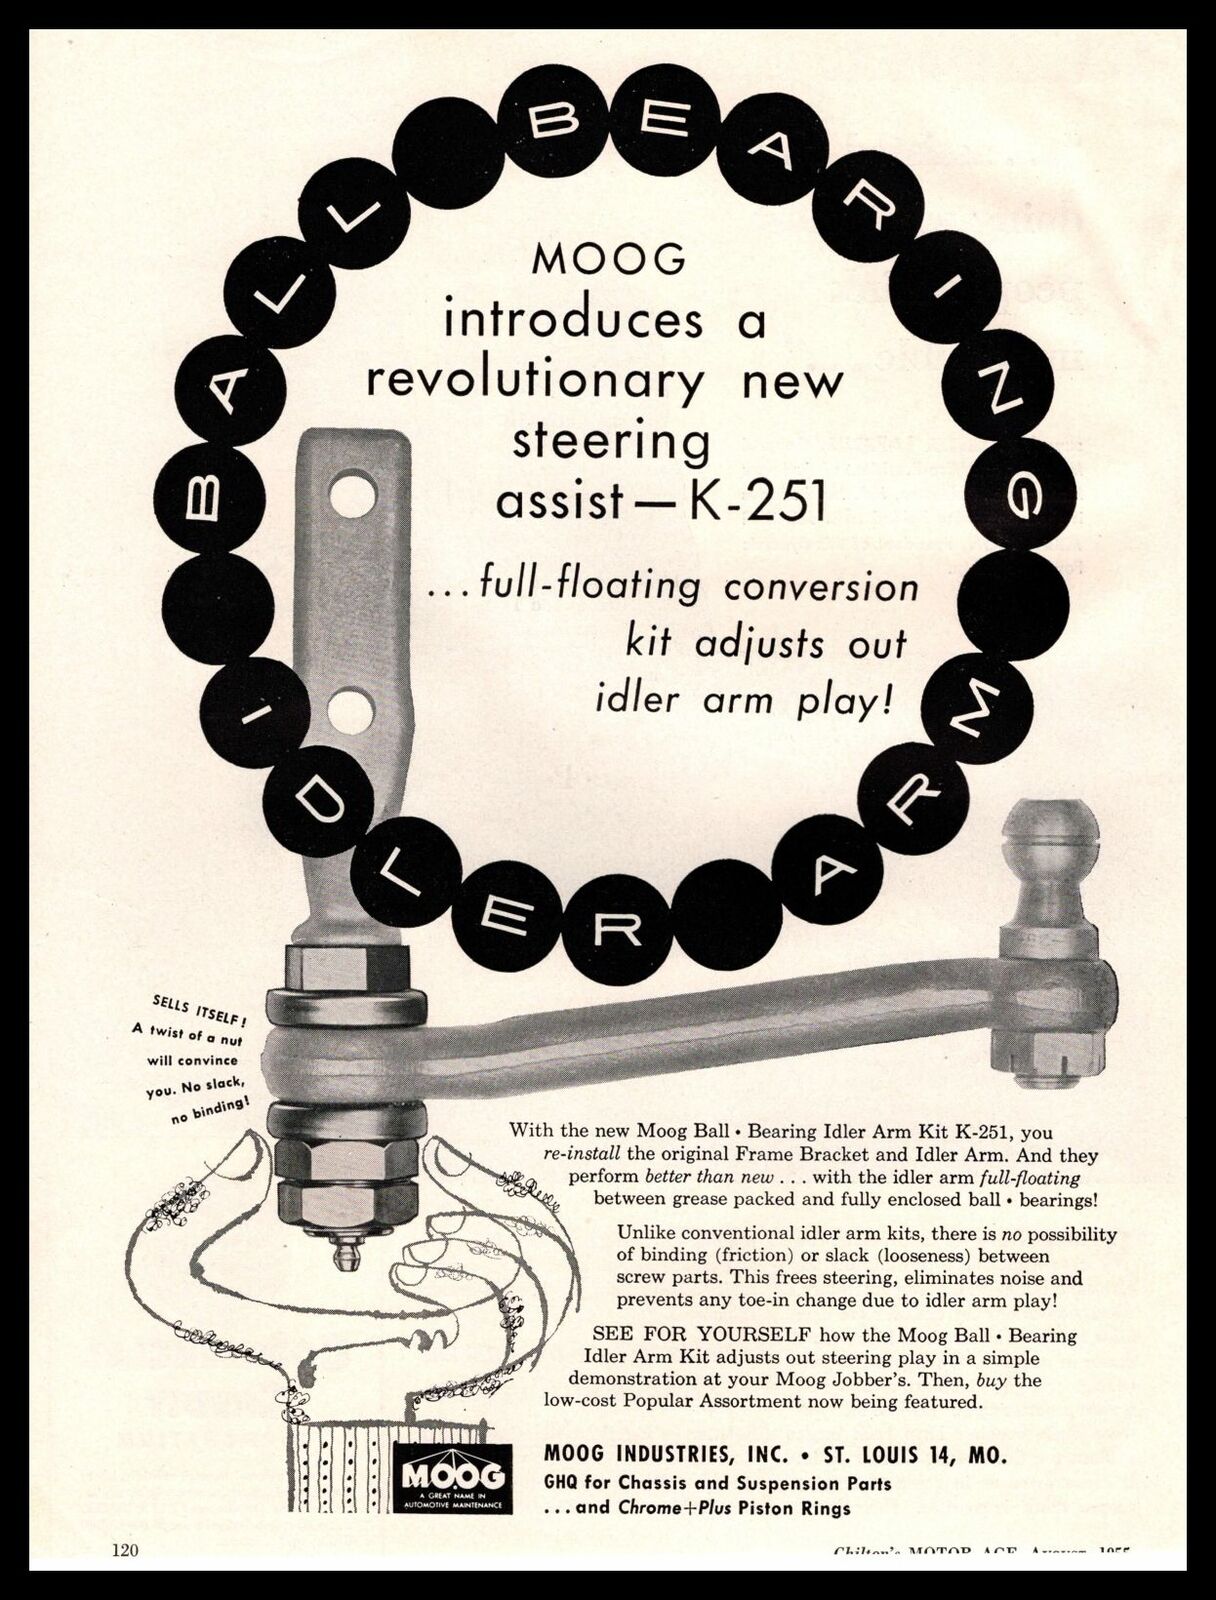 1955 MOOG St Louis Ball Bearing Idler Arm K-251 Steering Assist Vintage Print Ad